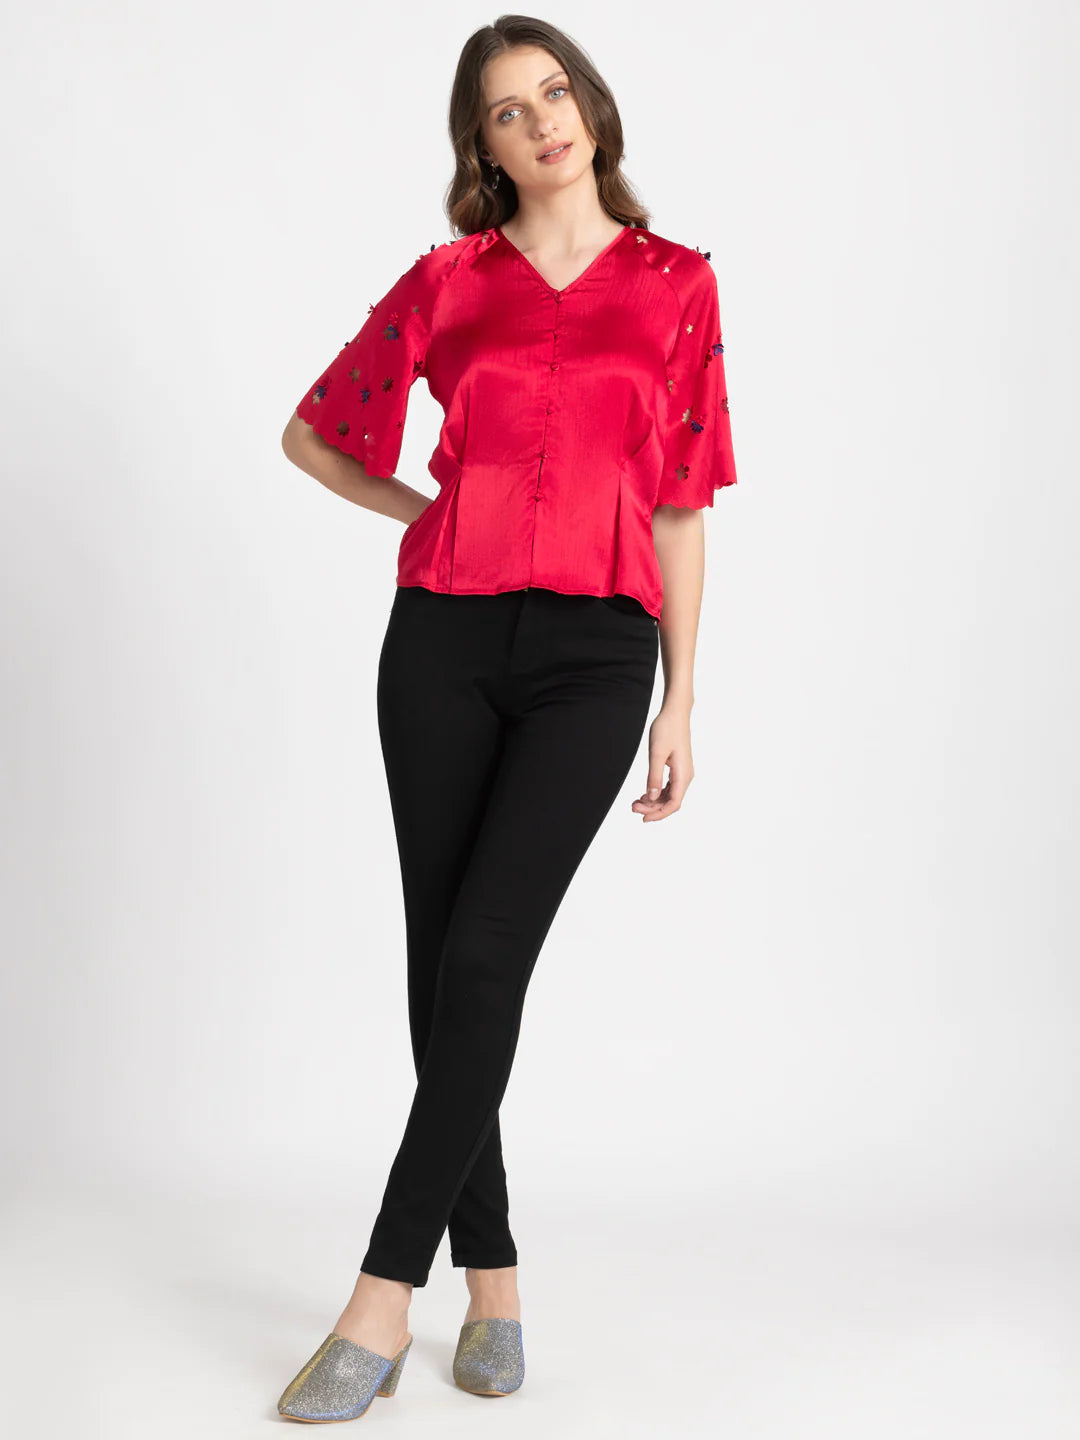 Red Casual Shirt for Women | Fuchsia Elegance Casual Shirt